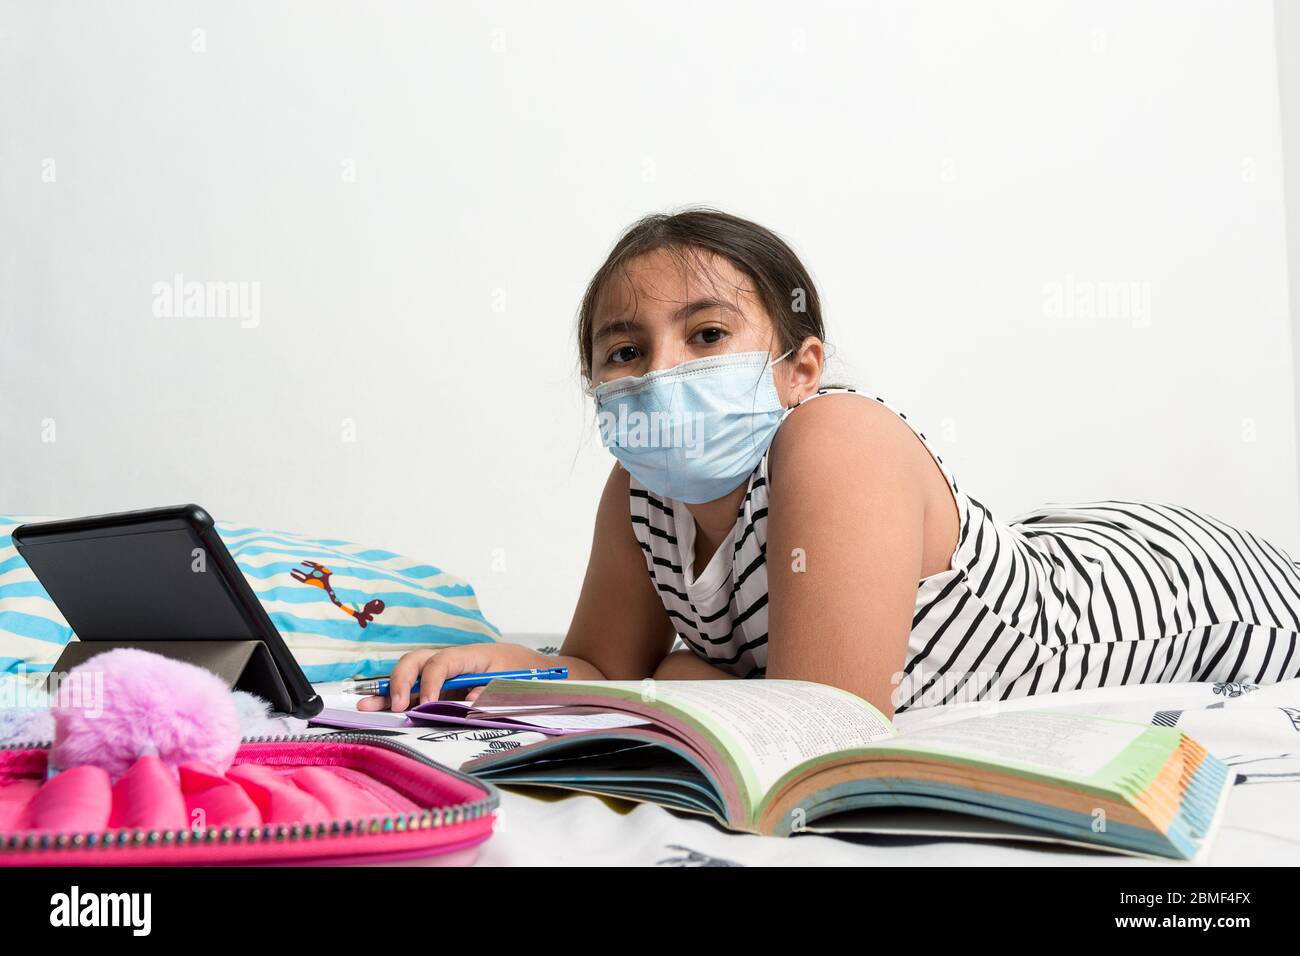 Junge asiatische Mädchen tragen Schutzmaske auf ihrem Bett liegend Studium - Corona Virus Home Schule Konzept Bild mit Kopie Raum für Text Stockfoto